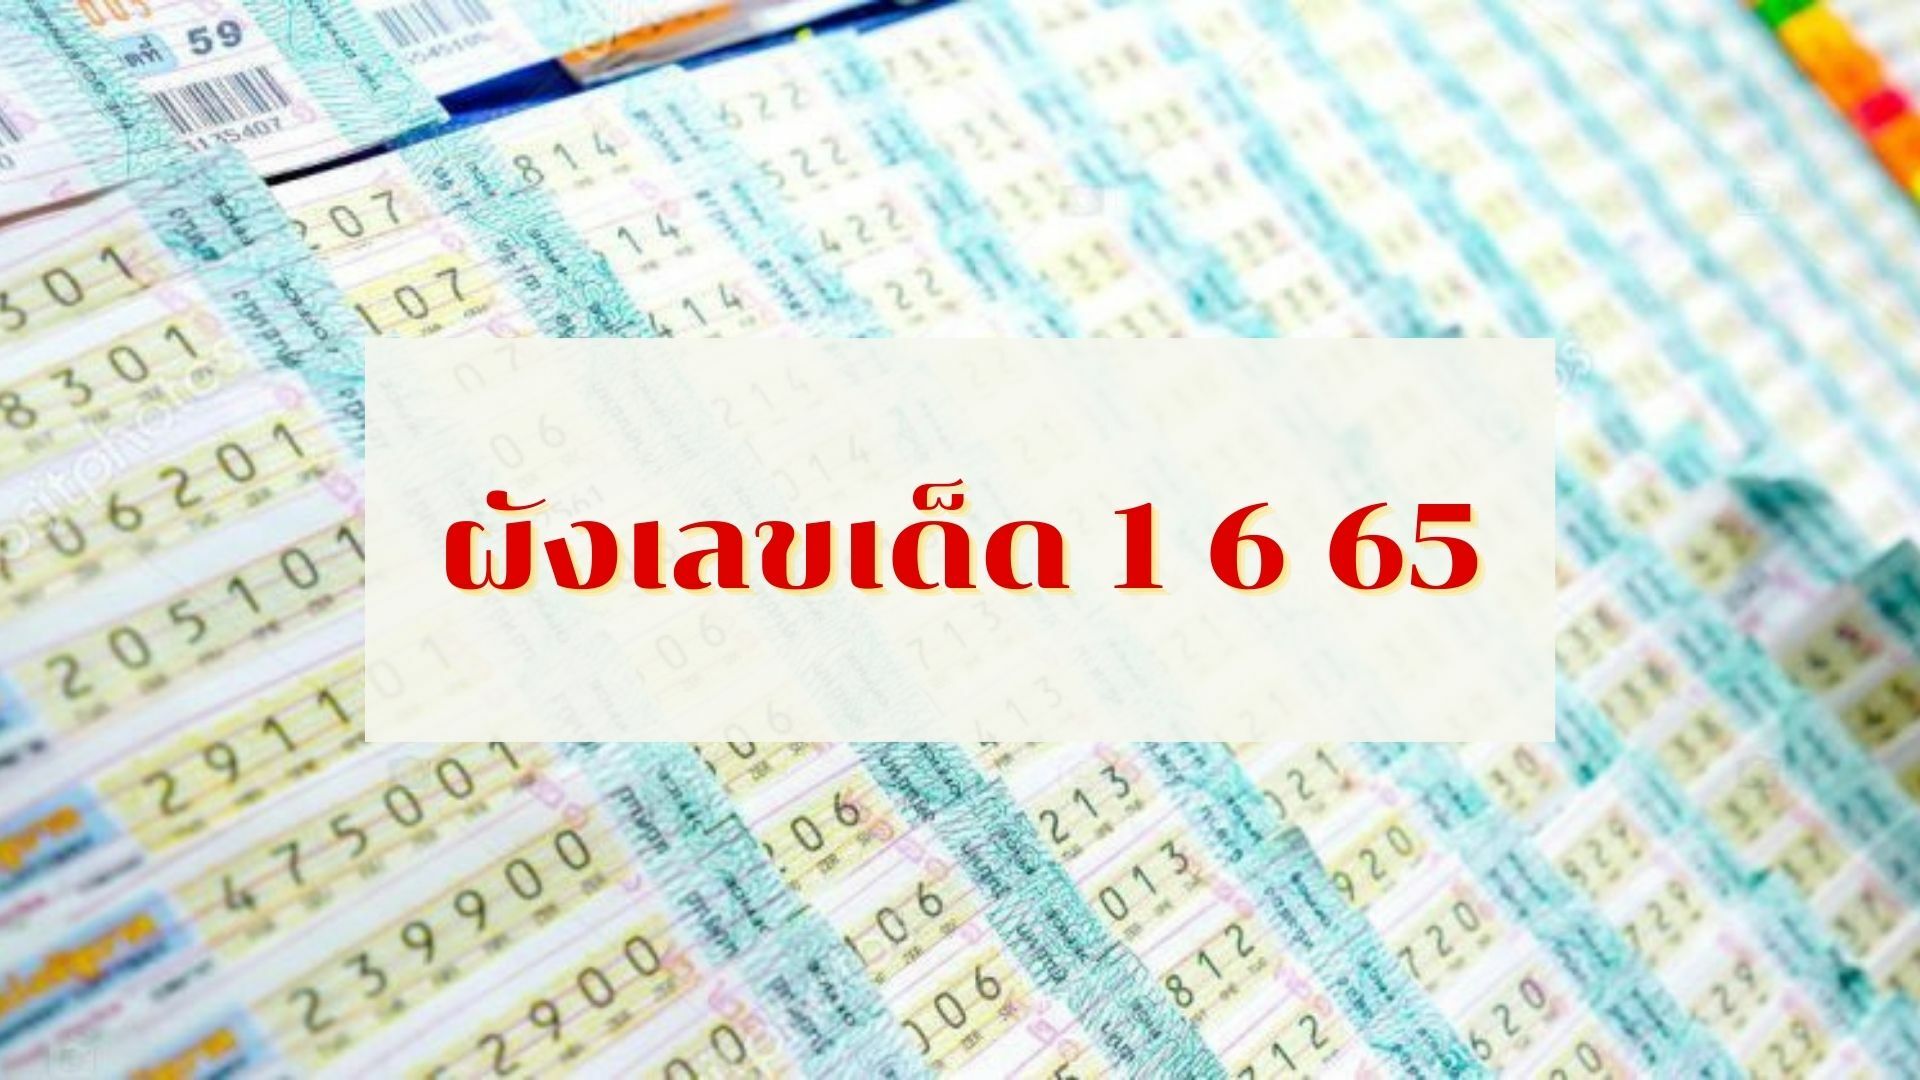 ผังเลขเด็ด 1 6 65 ลุ้นเลขดัง 2 ตัว 3 ตัว งวด 1 มิถุนายนนี้ ใครดวงดี  อาจได้โชค | Thaiger ข่าวไทย